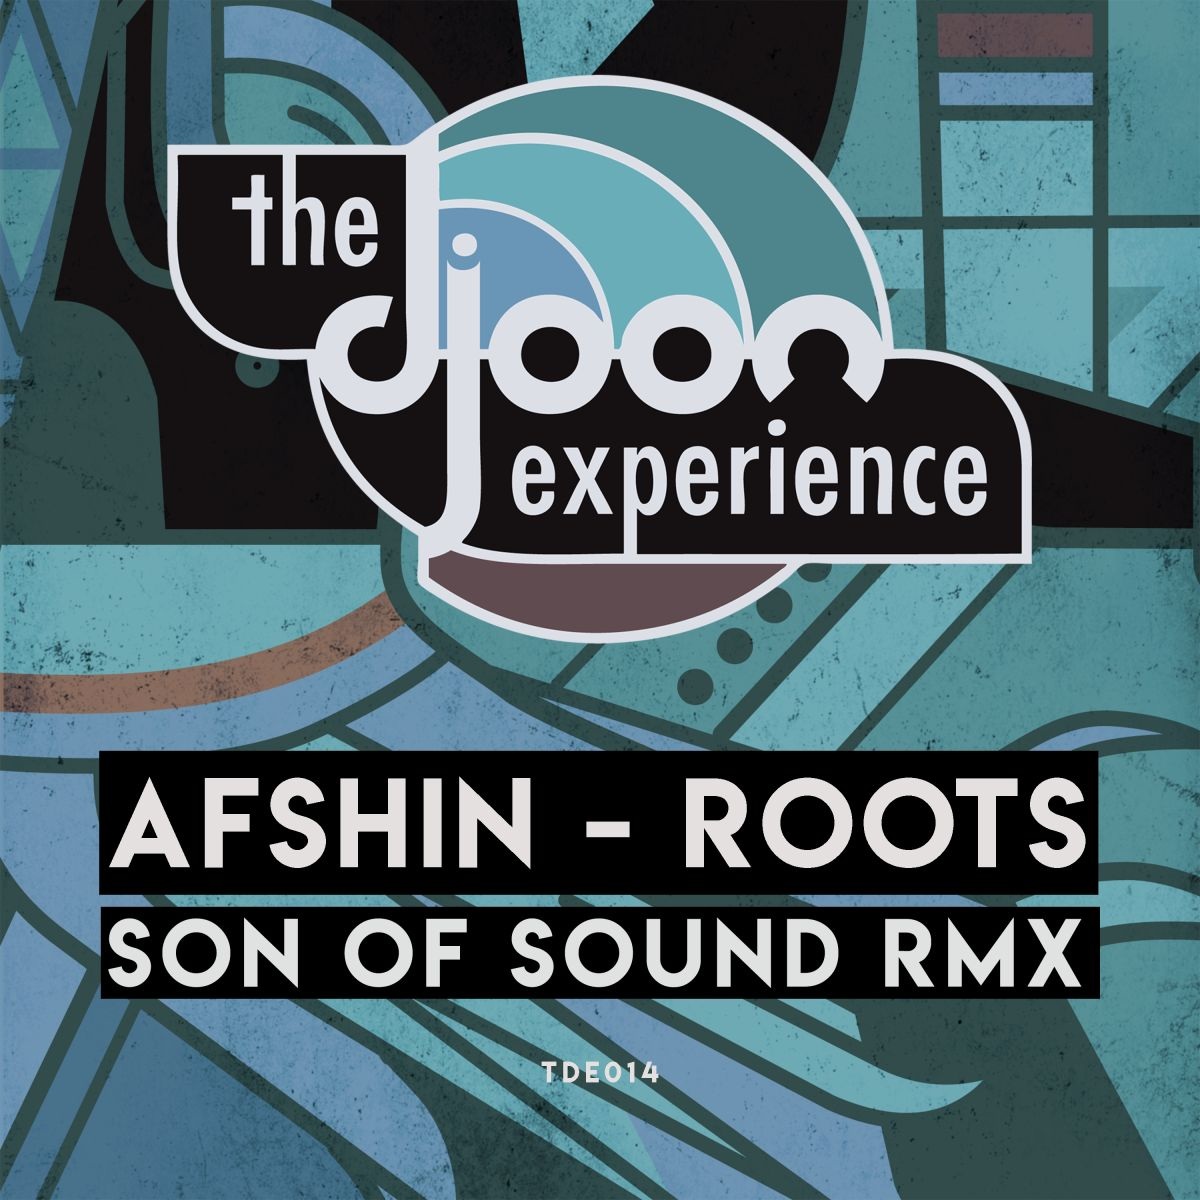 Afshin - Roots / Djoon Experience